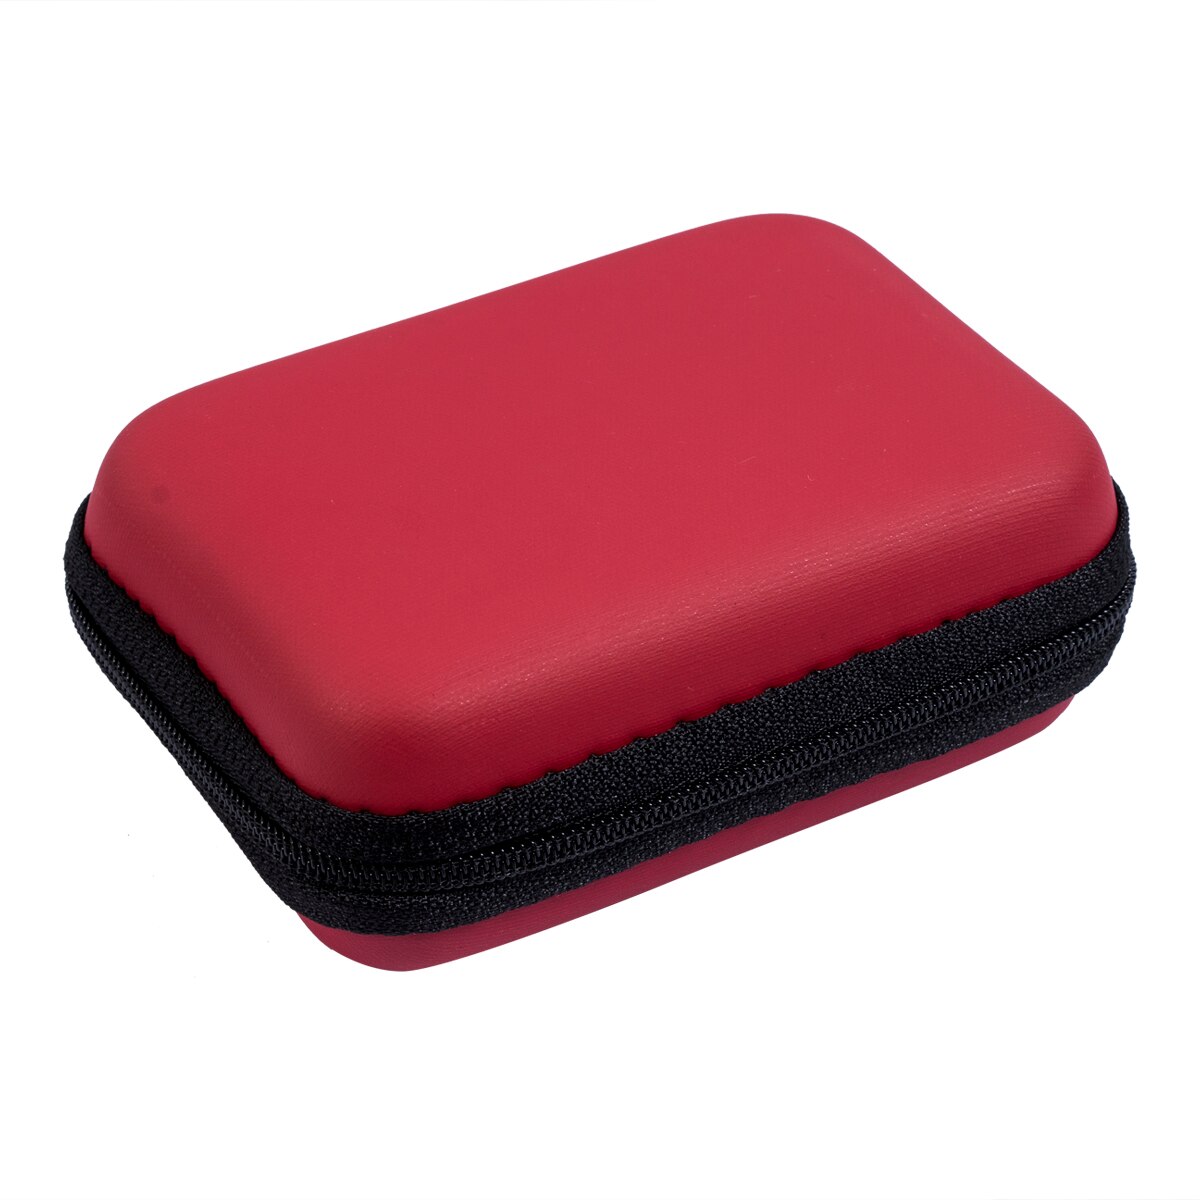 Bærbart rejsehovedtelefon øretelefon øretelefon kabel opbevaringspose taske hårdt etui indsæt flashdrev: Rød